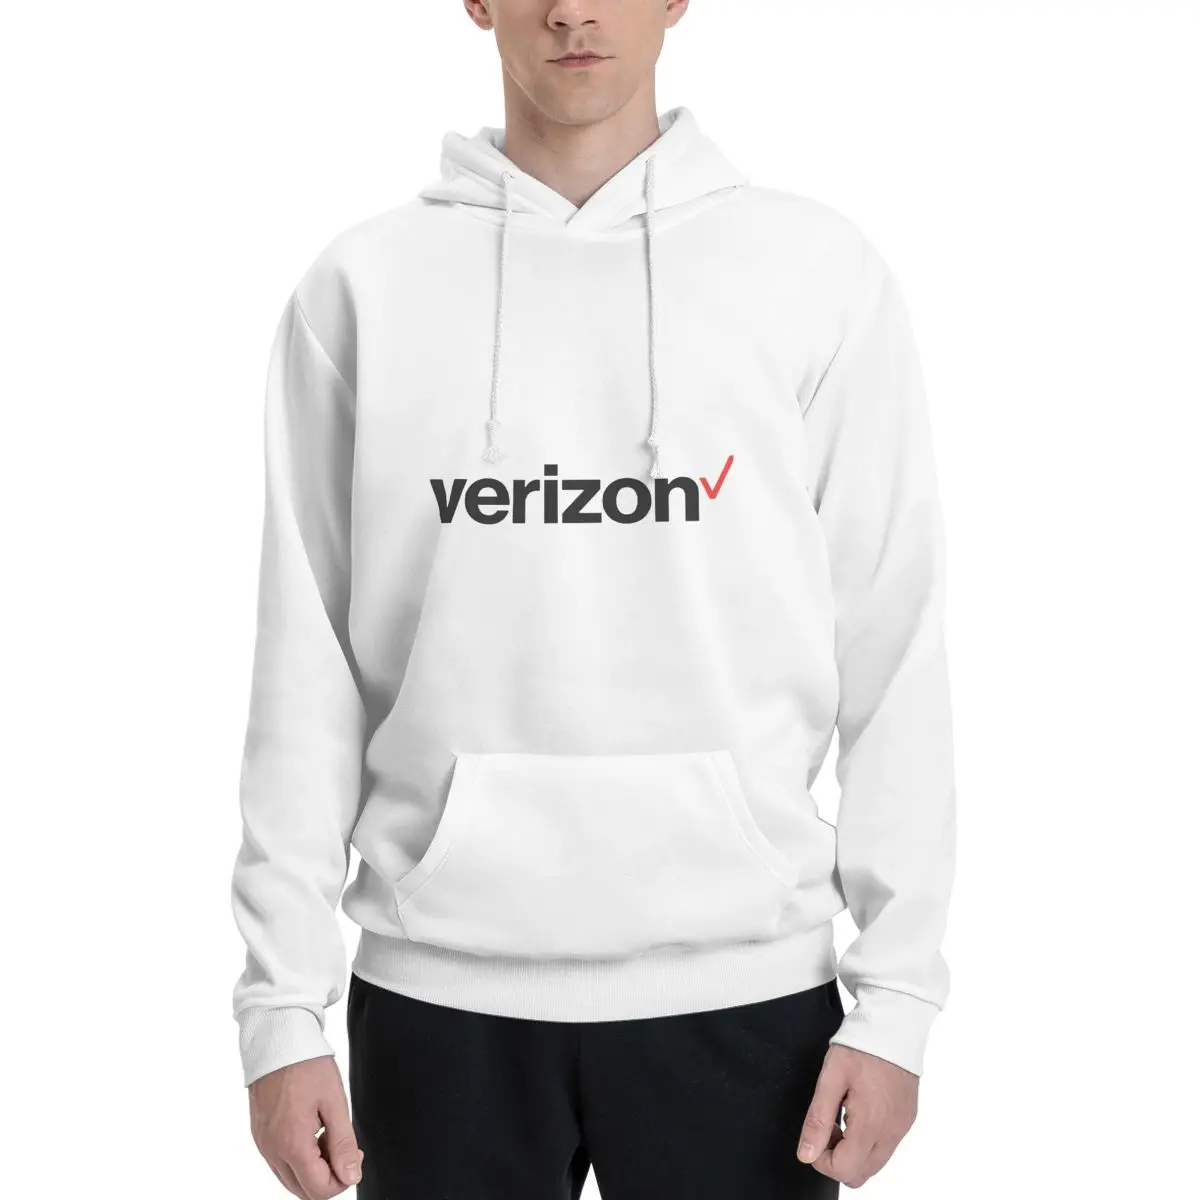 

Толстовка из полиэстера Verizon, мужской женский свитер, размер XXS-3XL